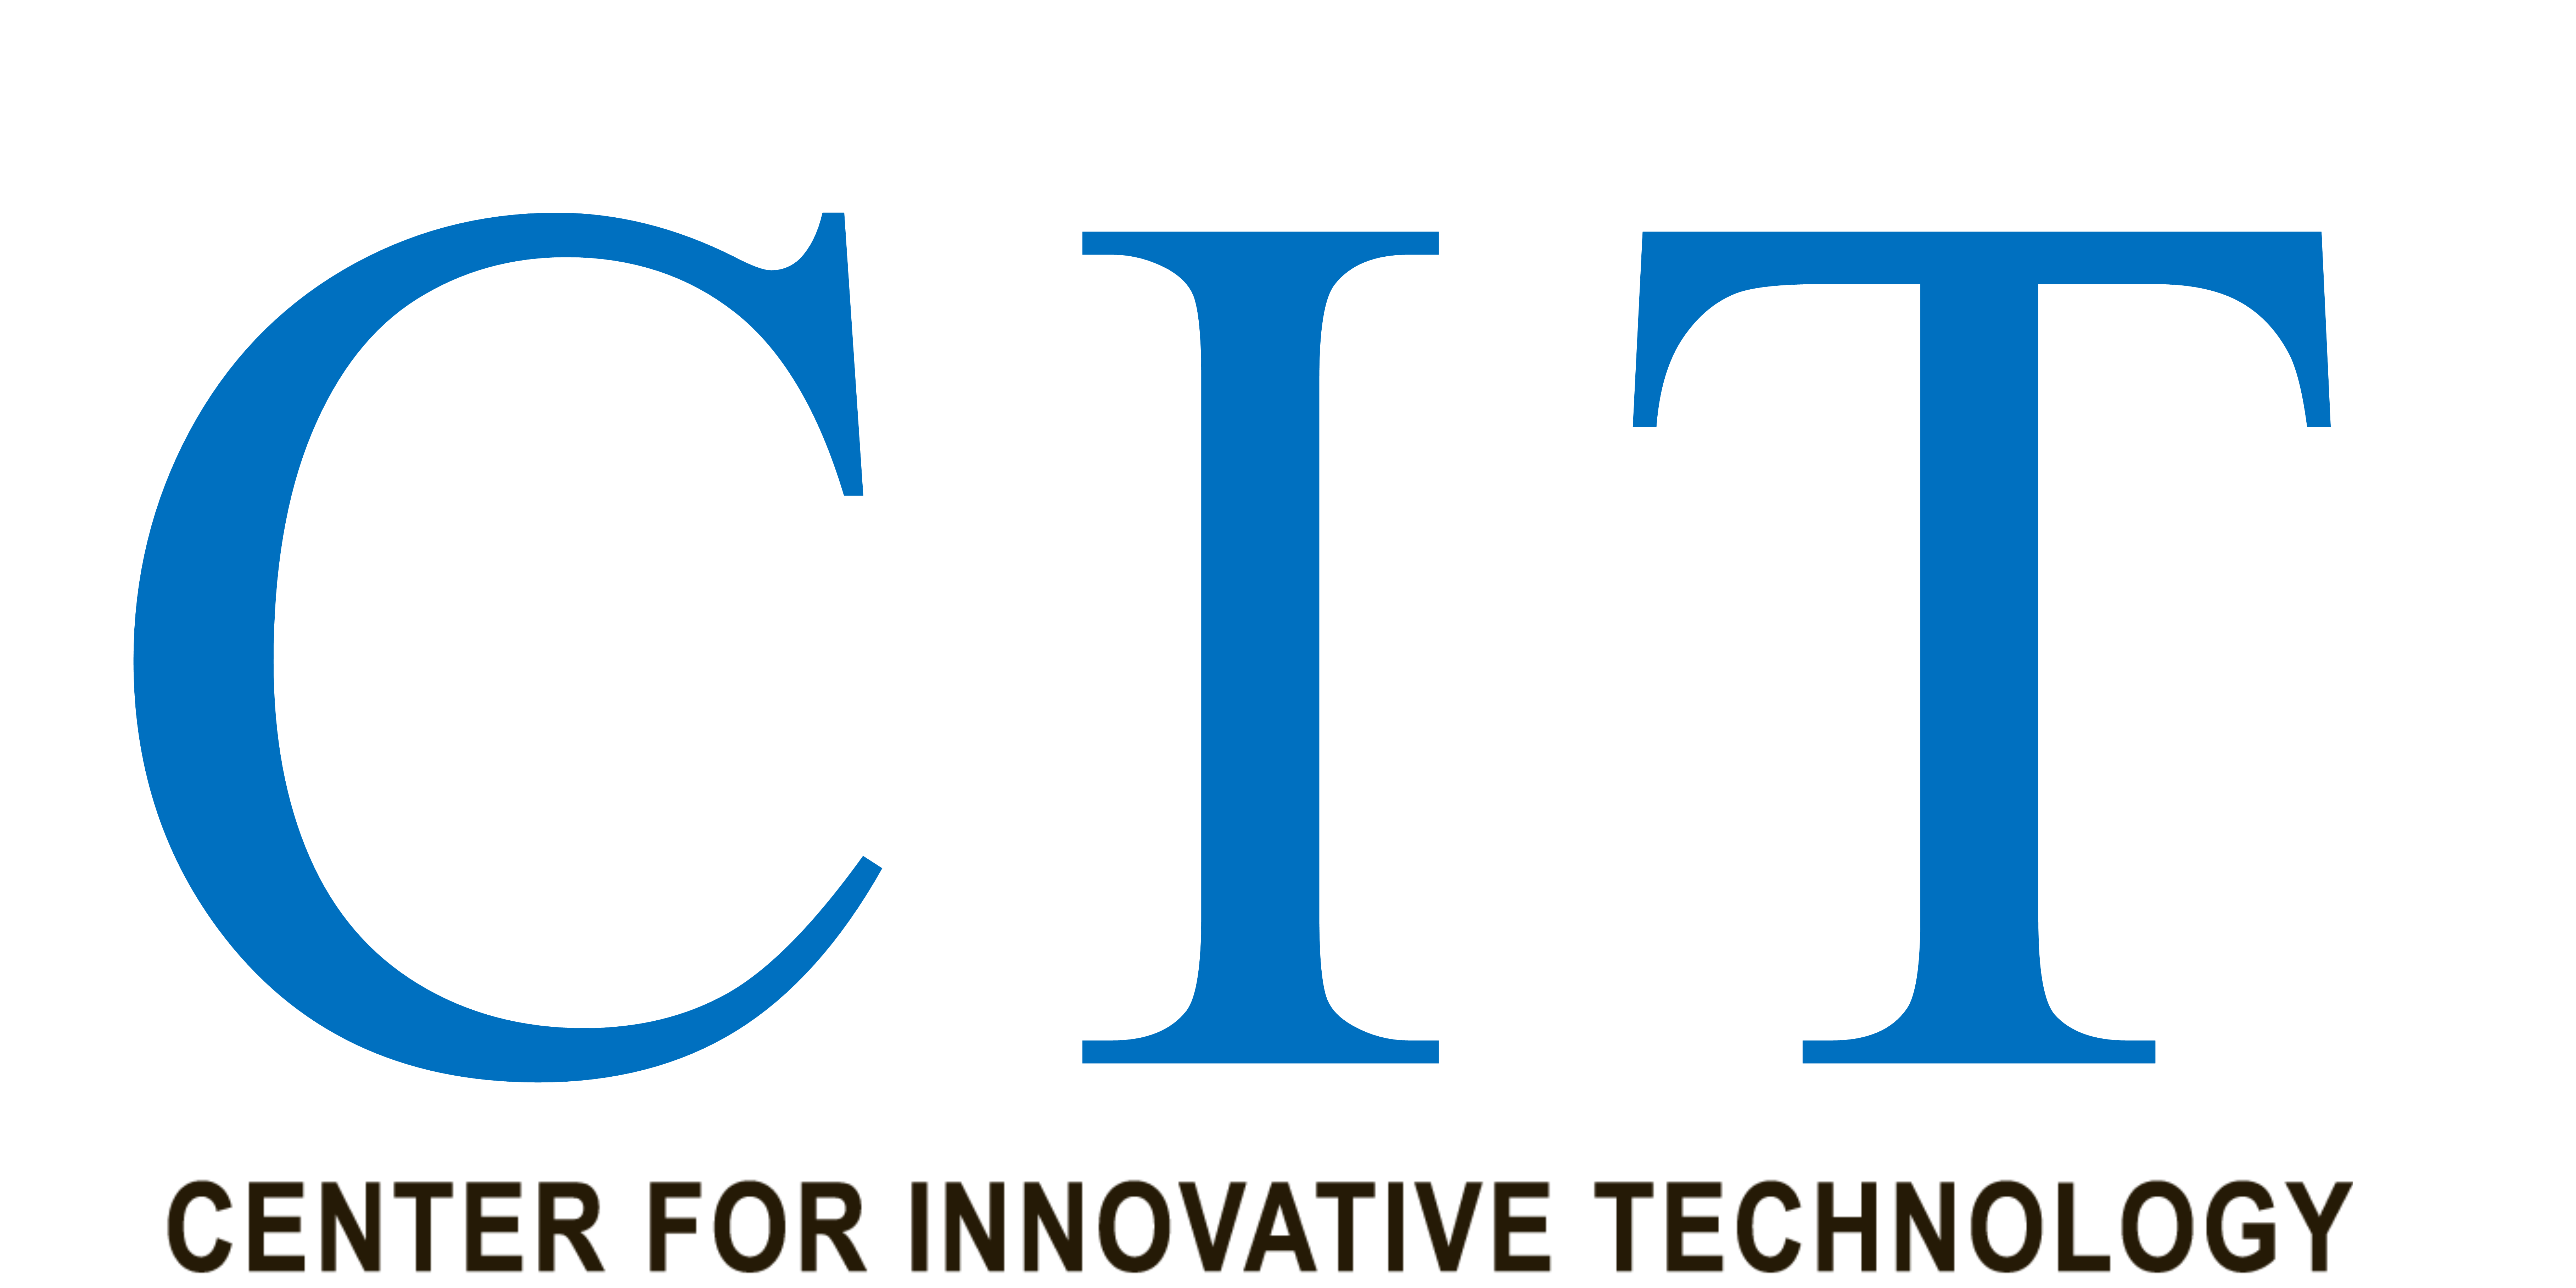 CIT Announces MACH37